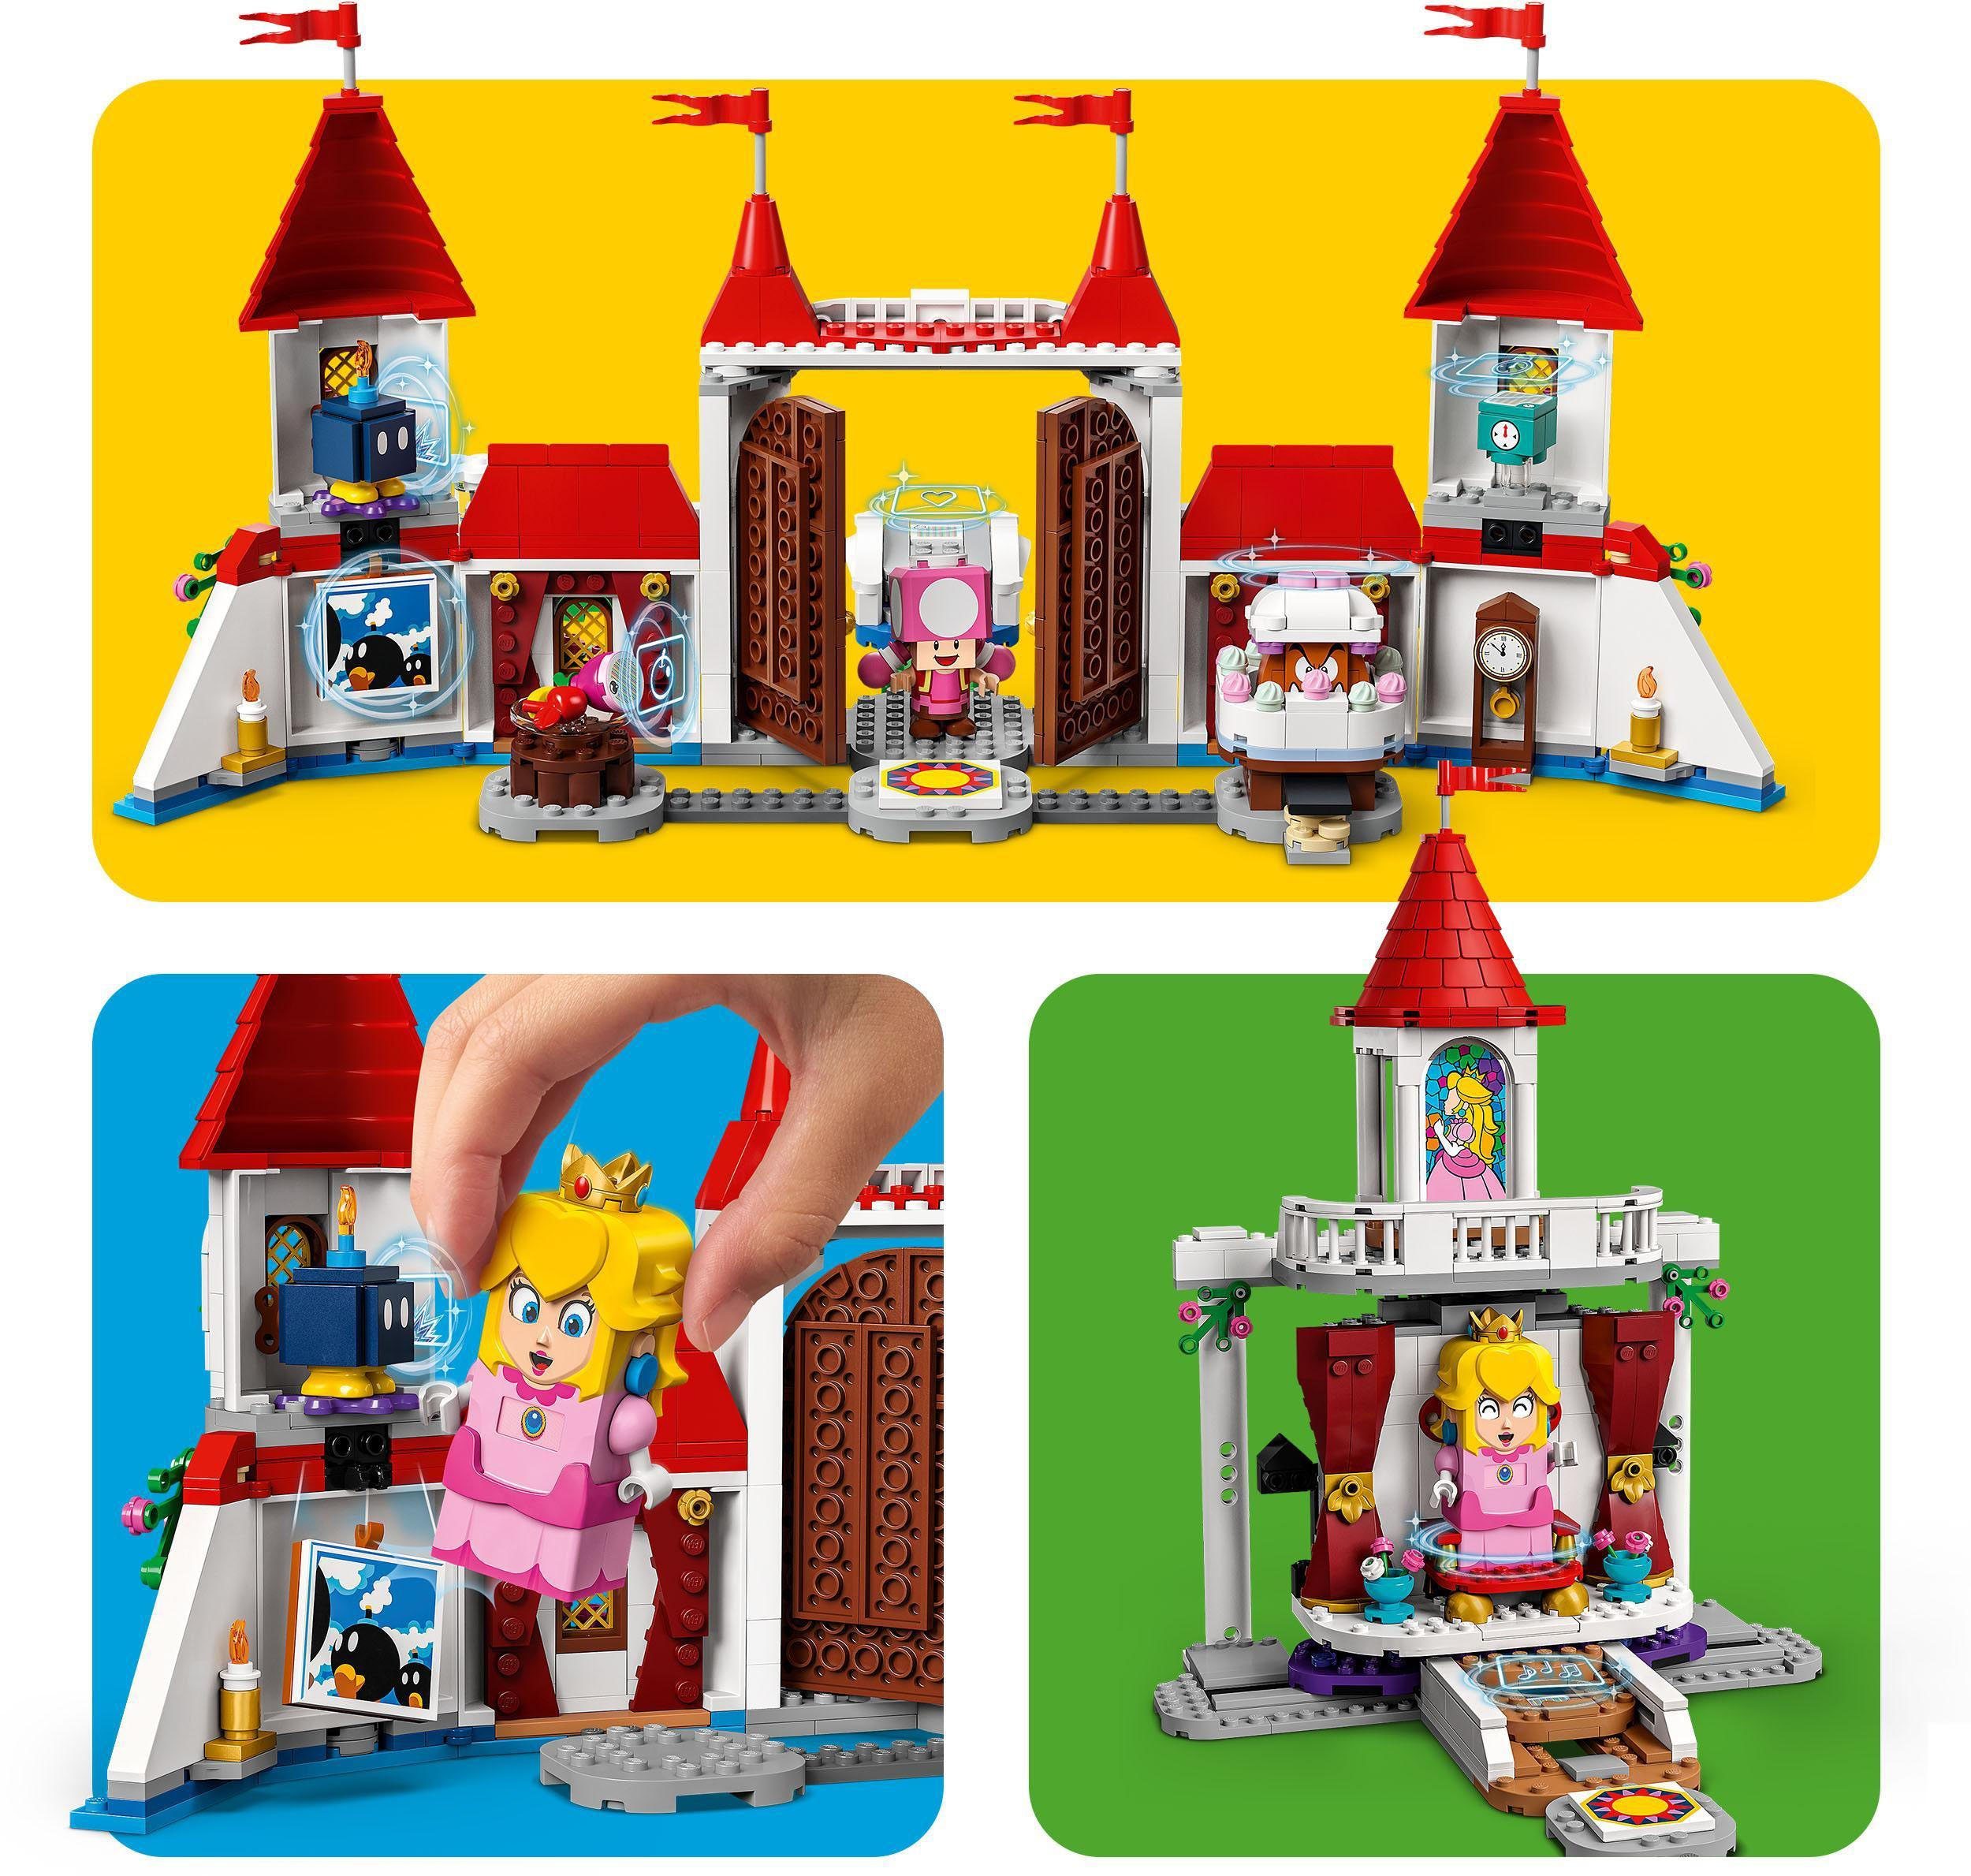 Super in Mario, LEGO® – Pilz-Palast Erweiterungsset St), (71408), LEGO® (1216 Europe Konstruktionsspielsteine Made